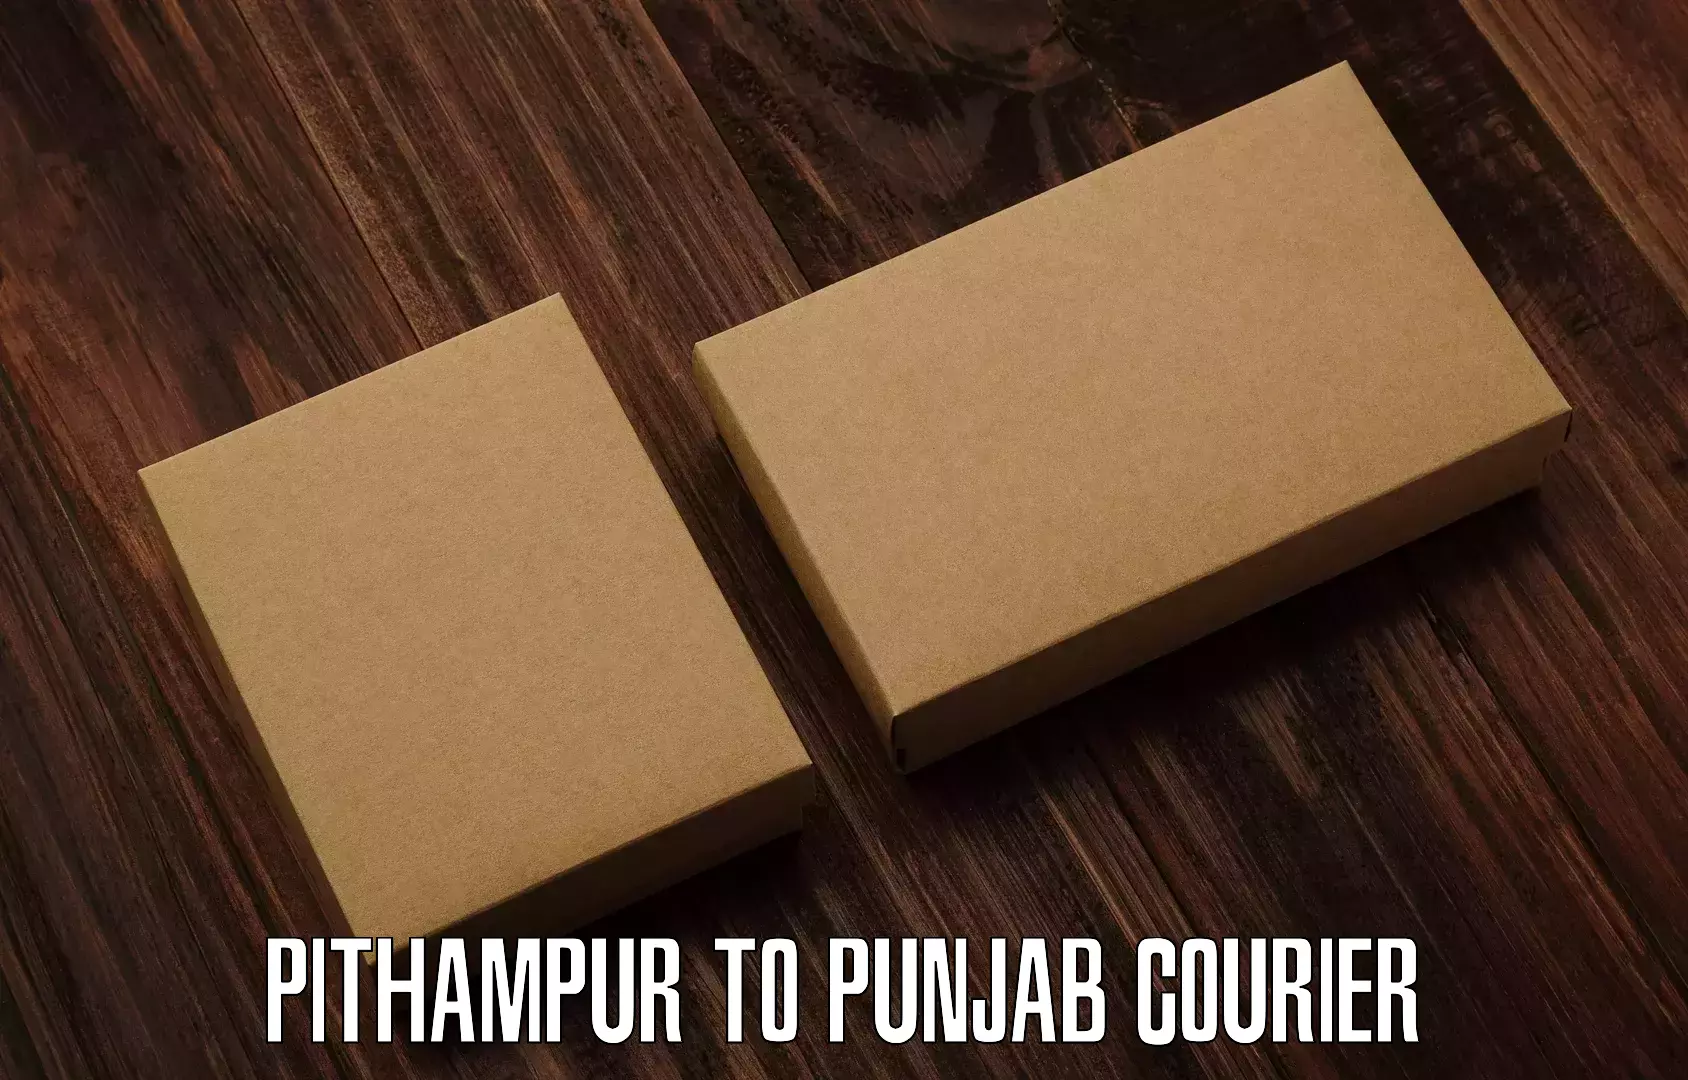 Express logistics service Pithampur to Jhunir